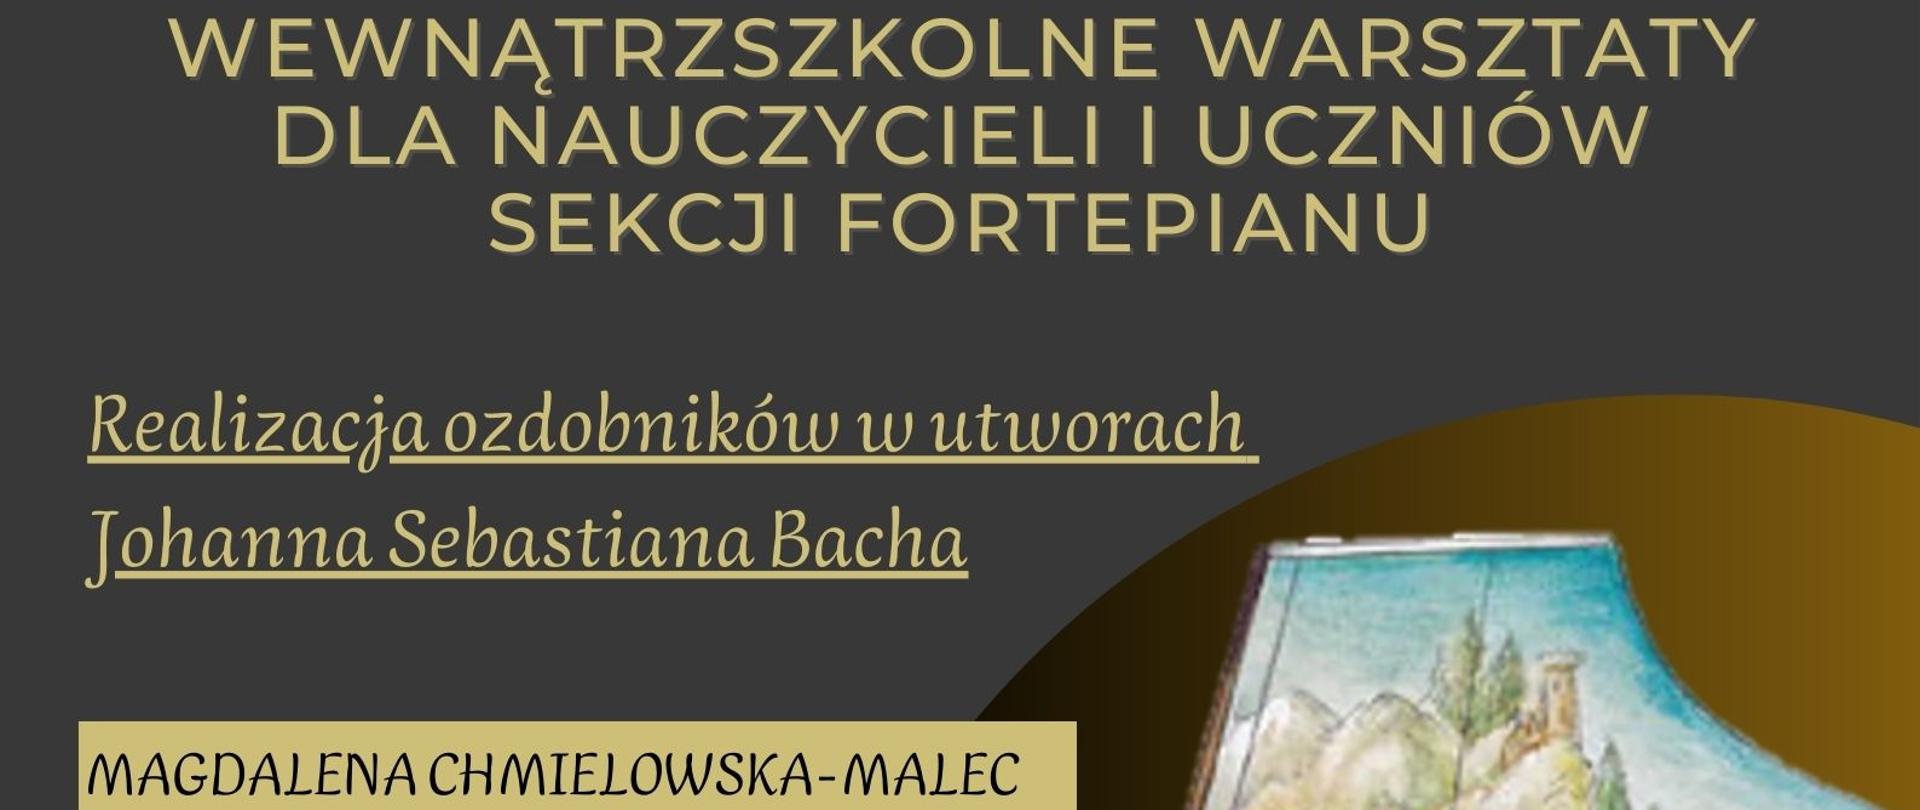 Wewnątrzszkole Warsztaty Dla Nauczycieli i Uczniów Sekcji Fortepianu 19.05.2023 od godz. 15:00 w Sali Kameralnej PSM I i II st. w Wadowicach prowadzone przez mgr Magdalenę Chmielowską-Malec. 